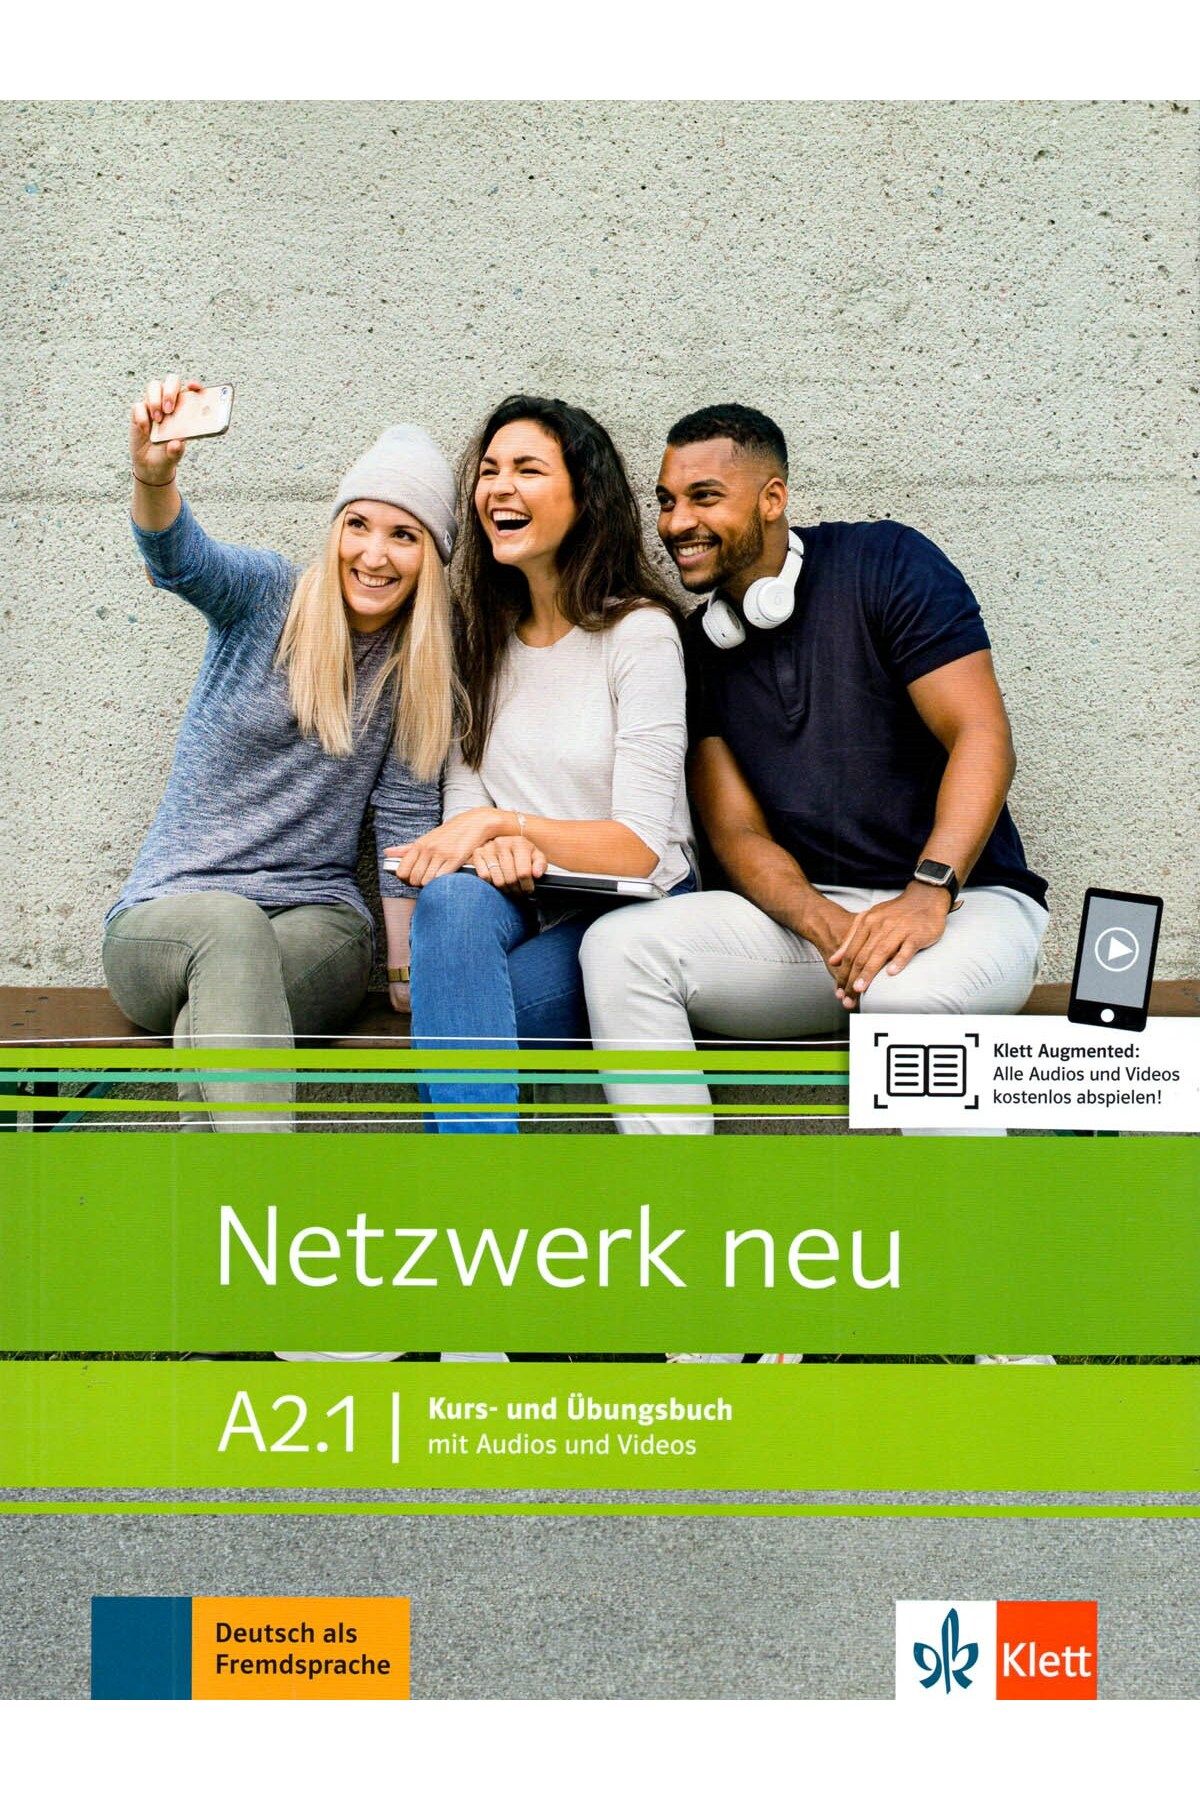 Klett Netzwerk neu A2.1 Kurs- und Übungsbuch mit Audios